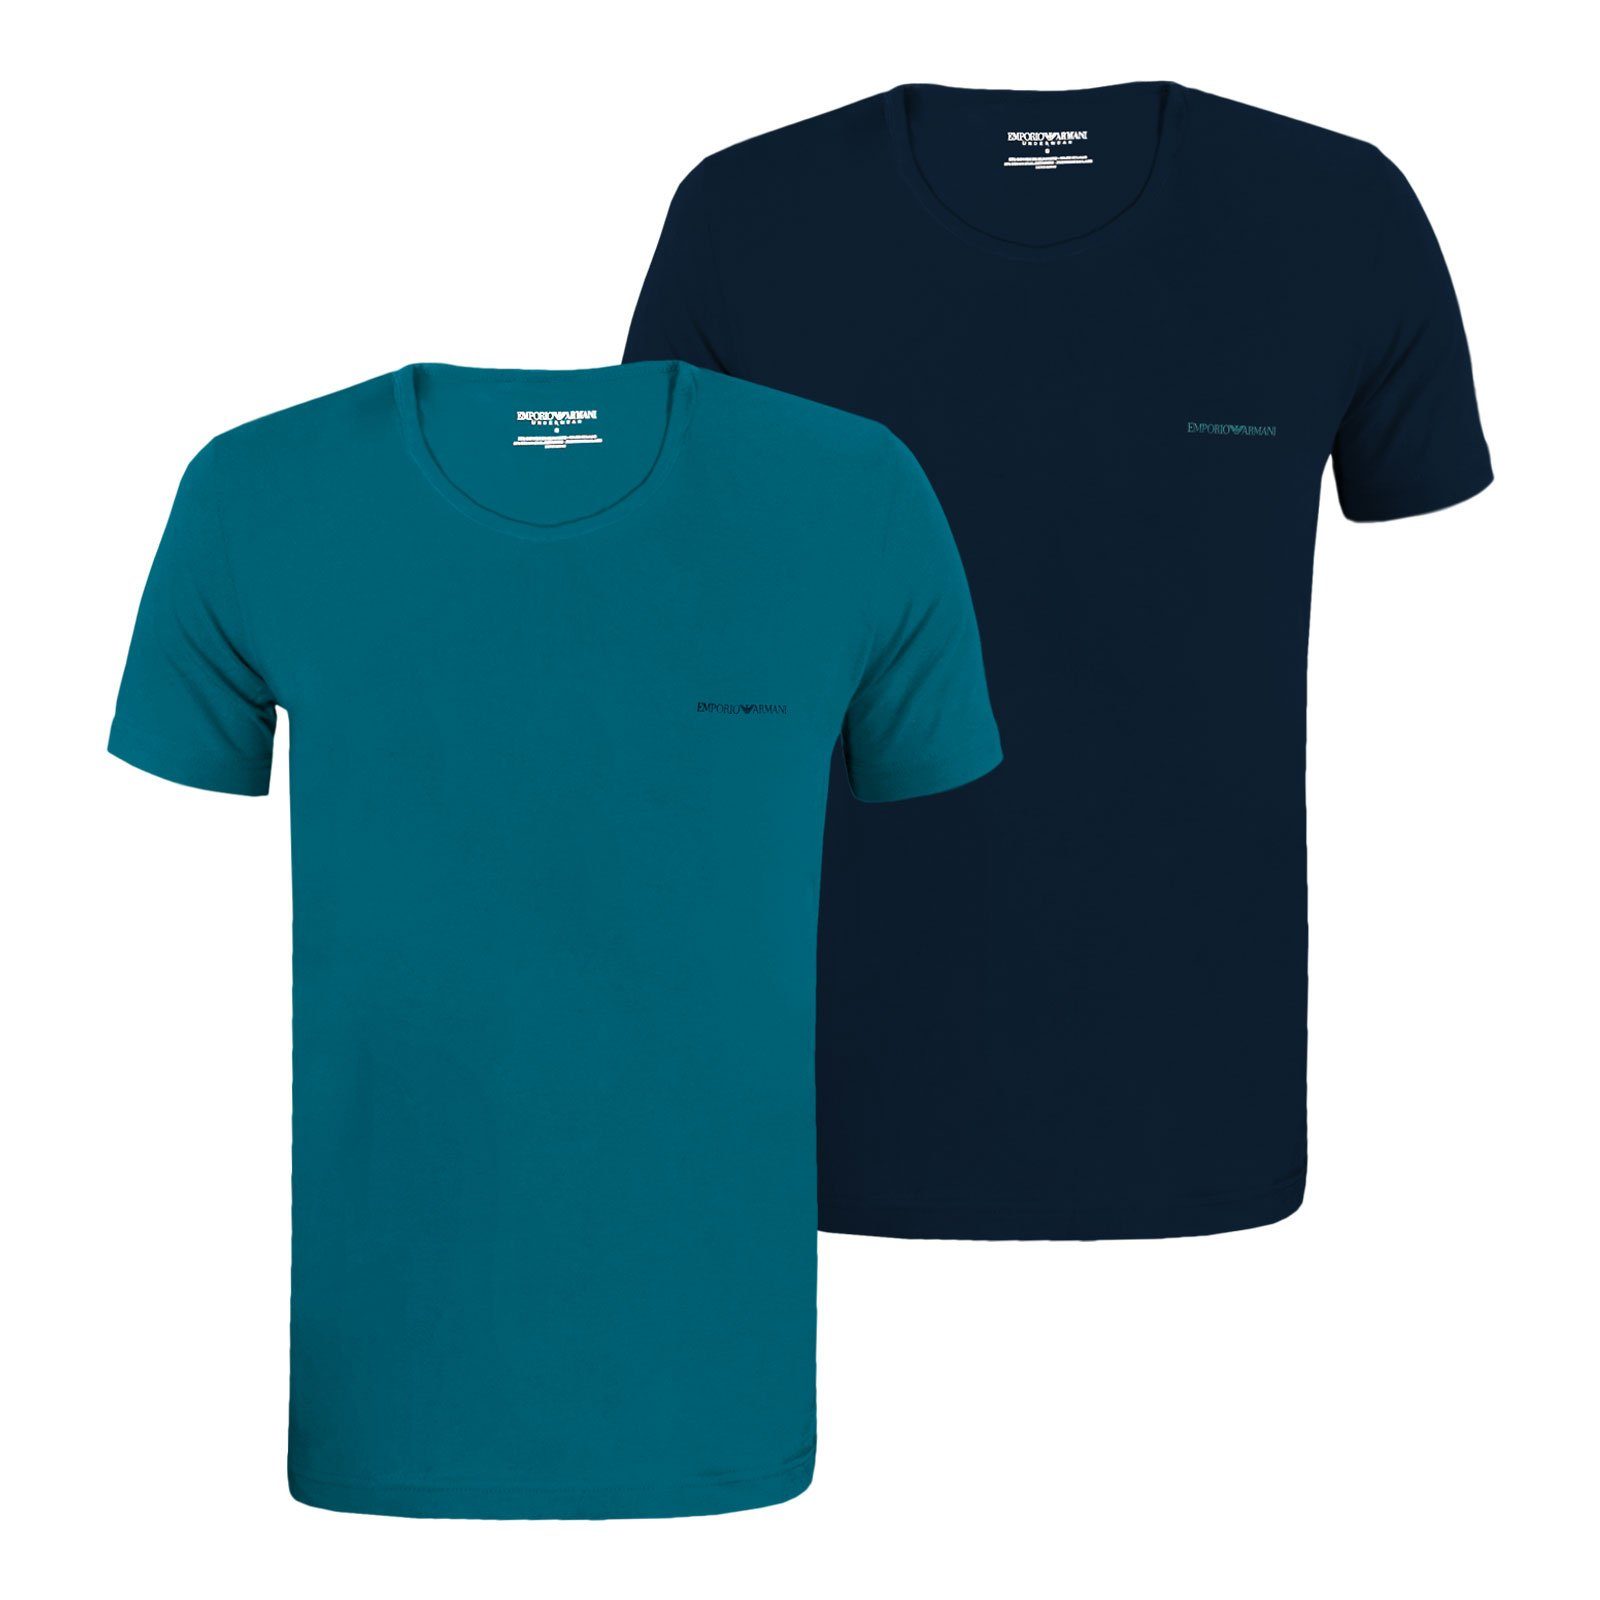 Emporio Armani T-Shirt Crew Neck T-Shirt Stretch Cotton mit Logo auf der Brust 17436 marine / topaz